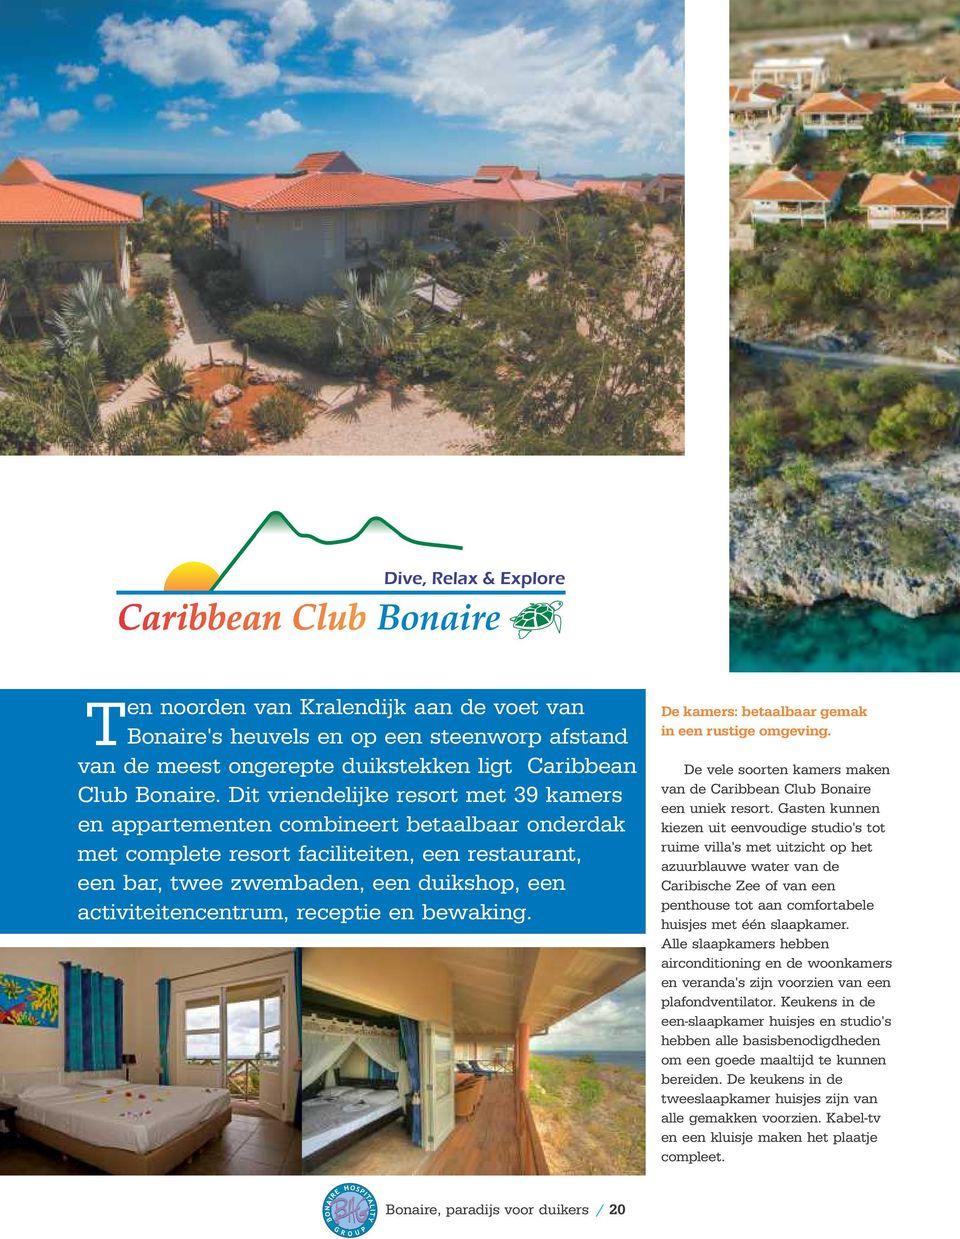 receptie en bewaking. De kamers: betaalbaar gemak in een rustige omgeving. De vele soorten kamers maken van de Caribbean Club Bonaire een uniek resort.